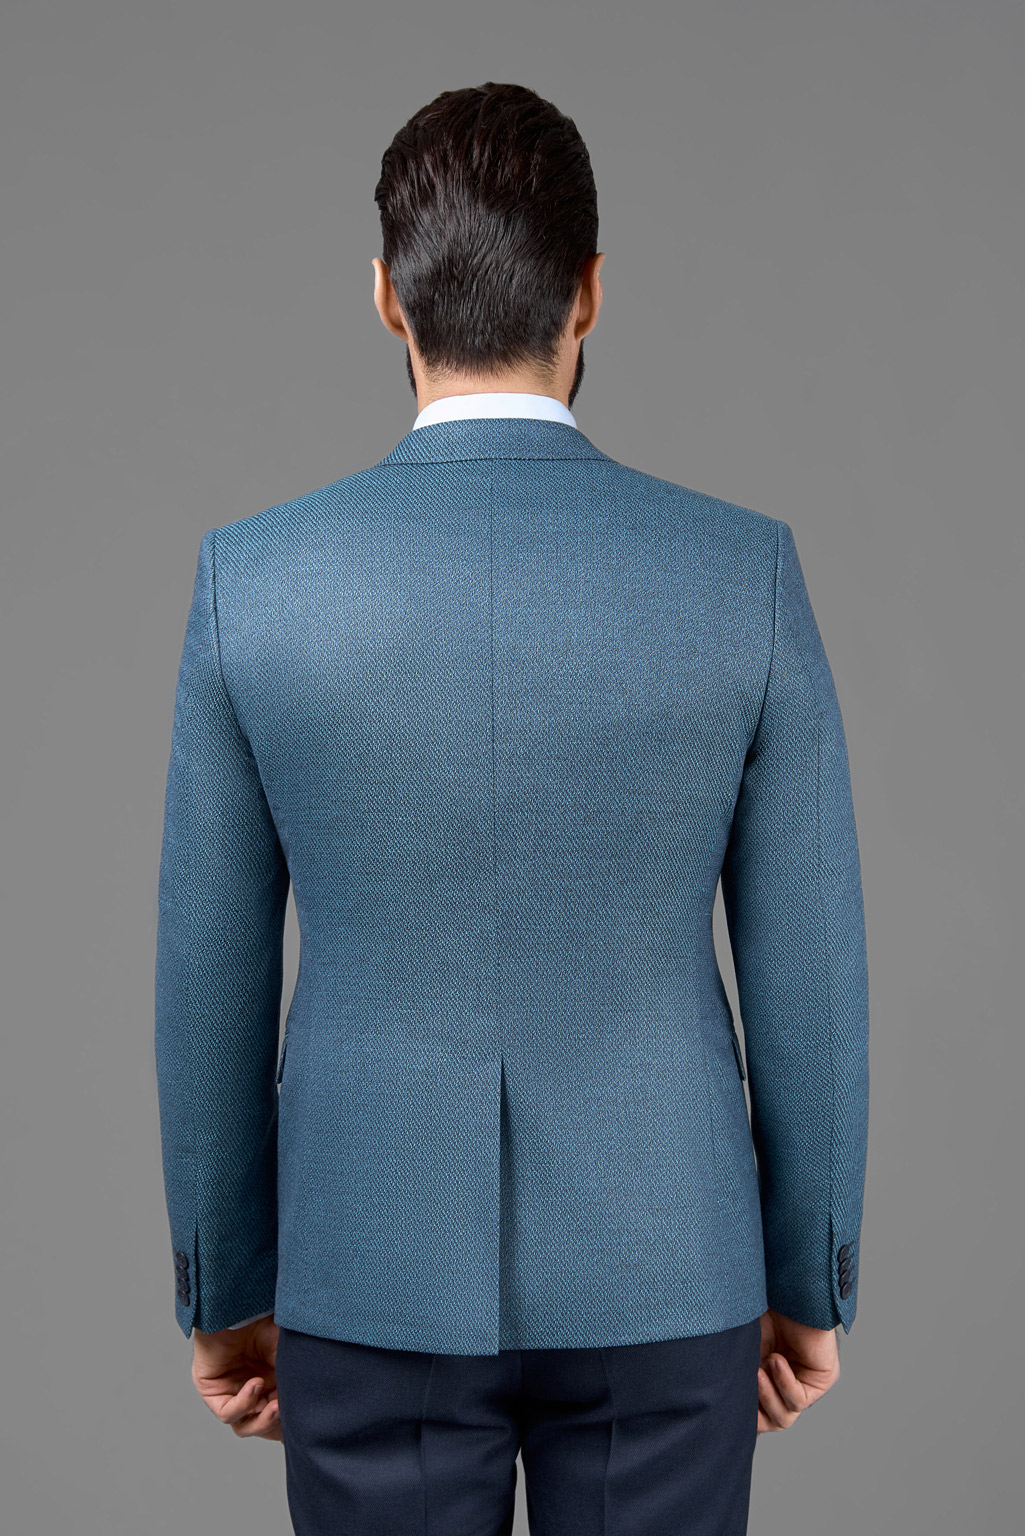 Пиджак из полушерстяной ткани с микродизайном Super Slim Fit